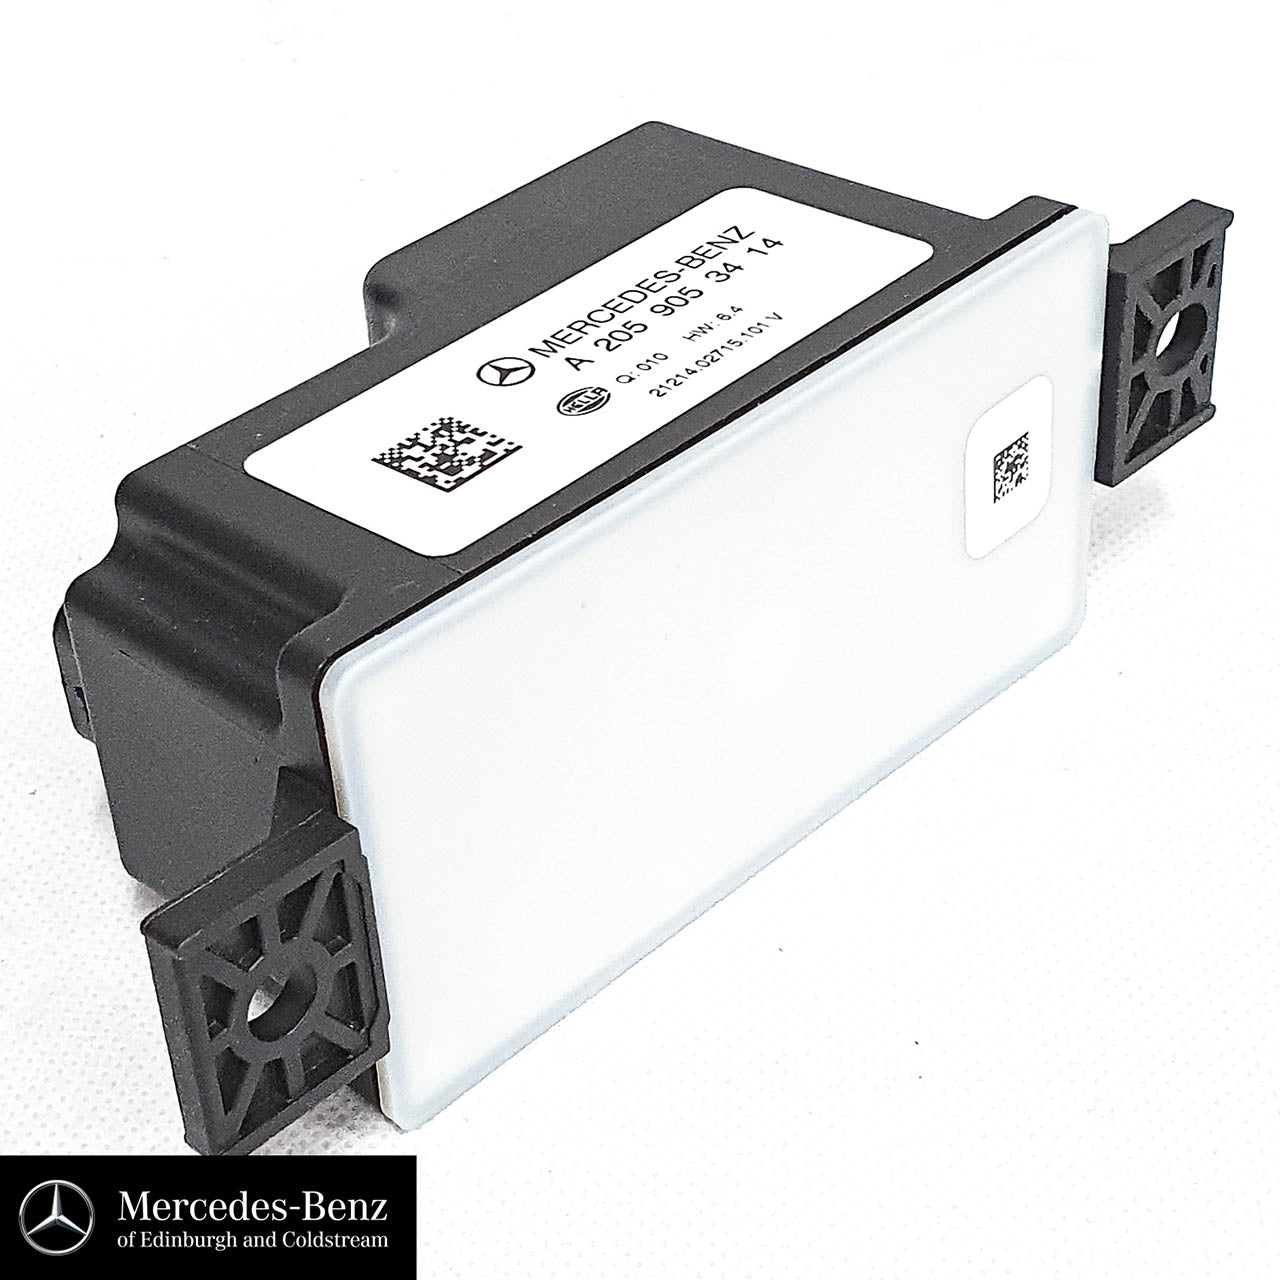 Genuine Mercedes-Benz Voltage Converter - Aux Battery